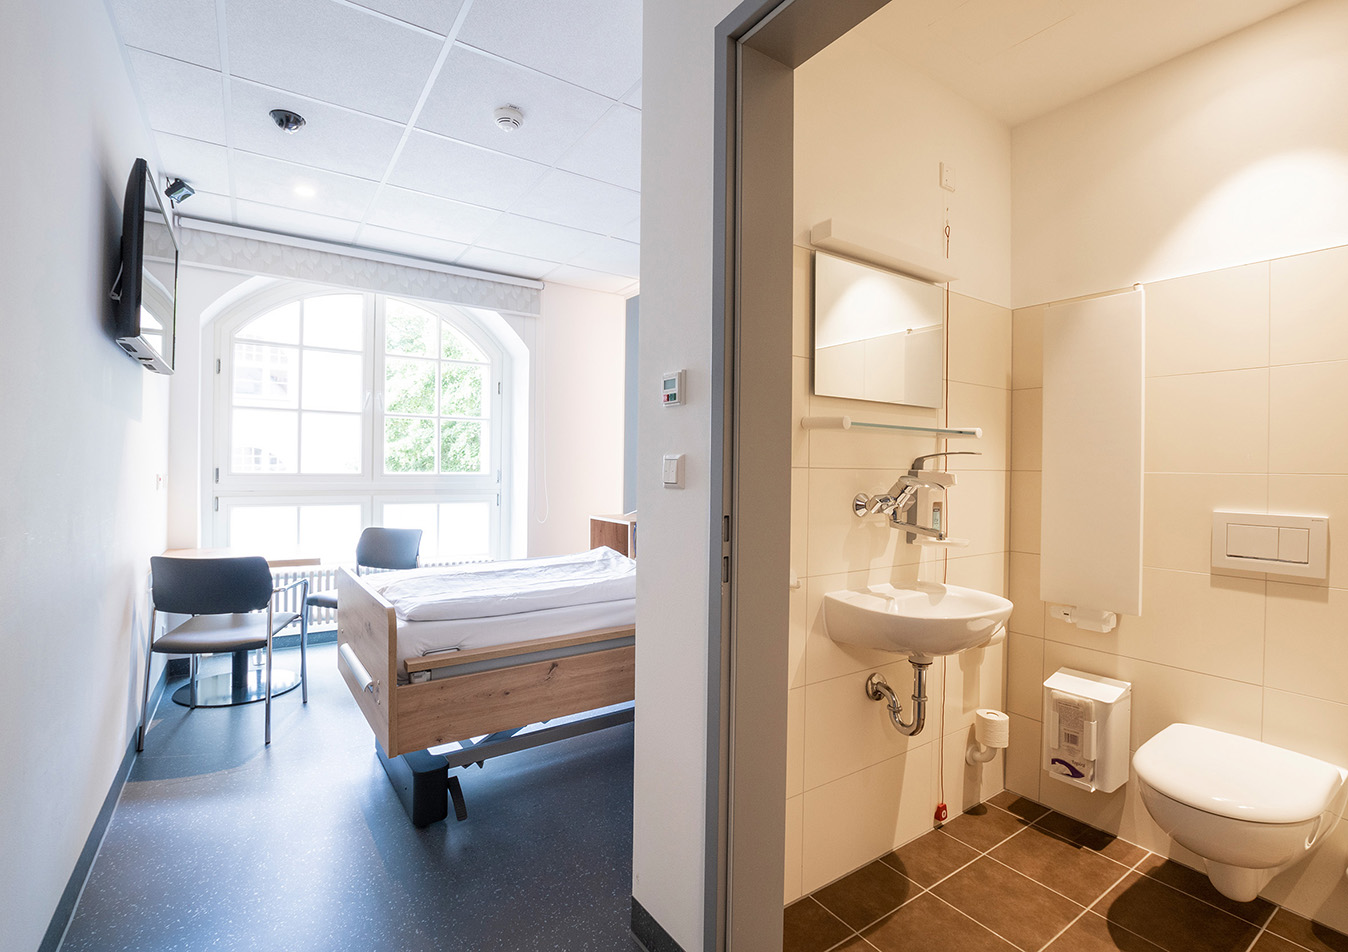 Patientenzimmer mit Bad und großen Fenstern